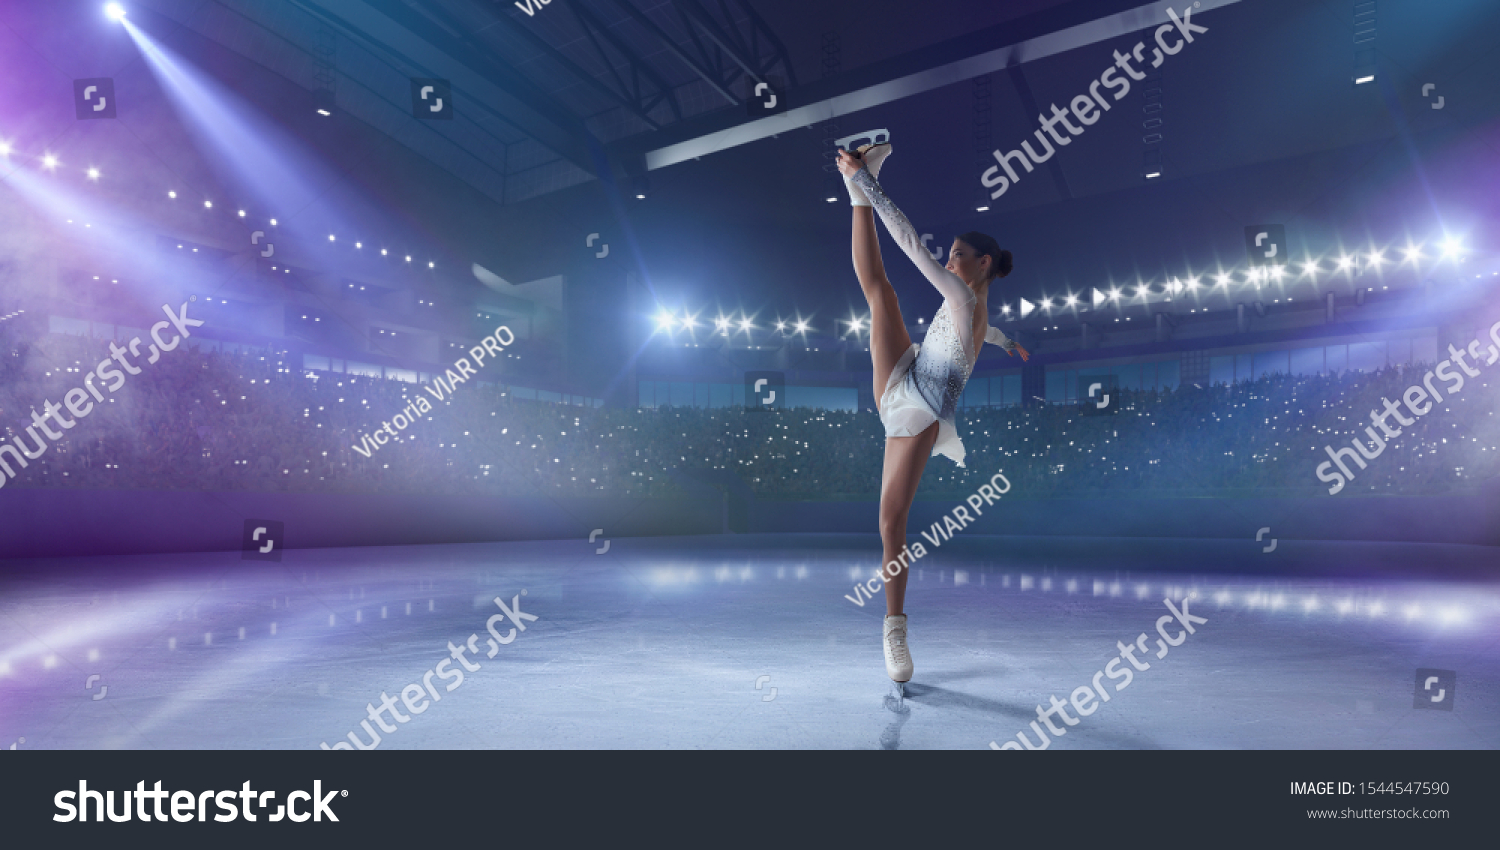 Figure skating girl in ice arena. #1544547590